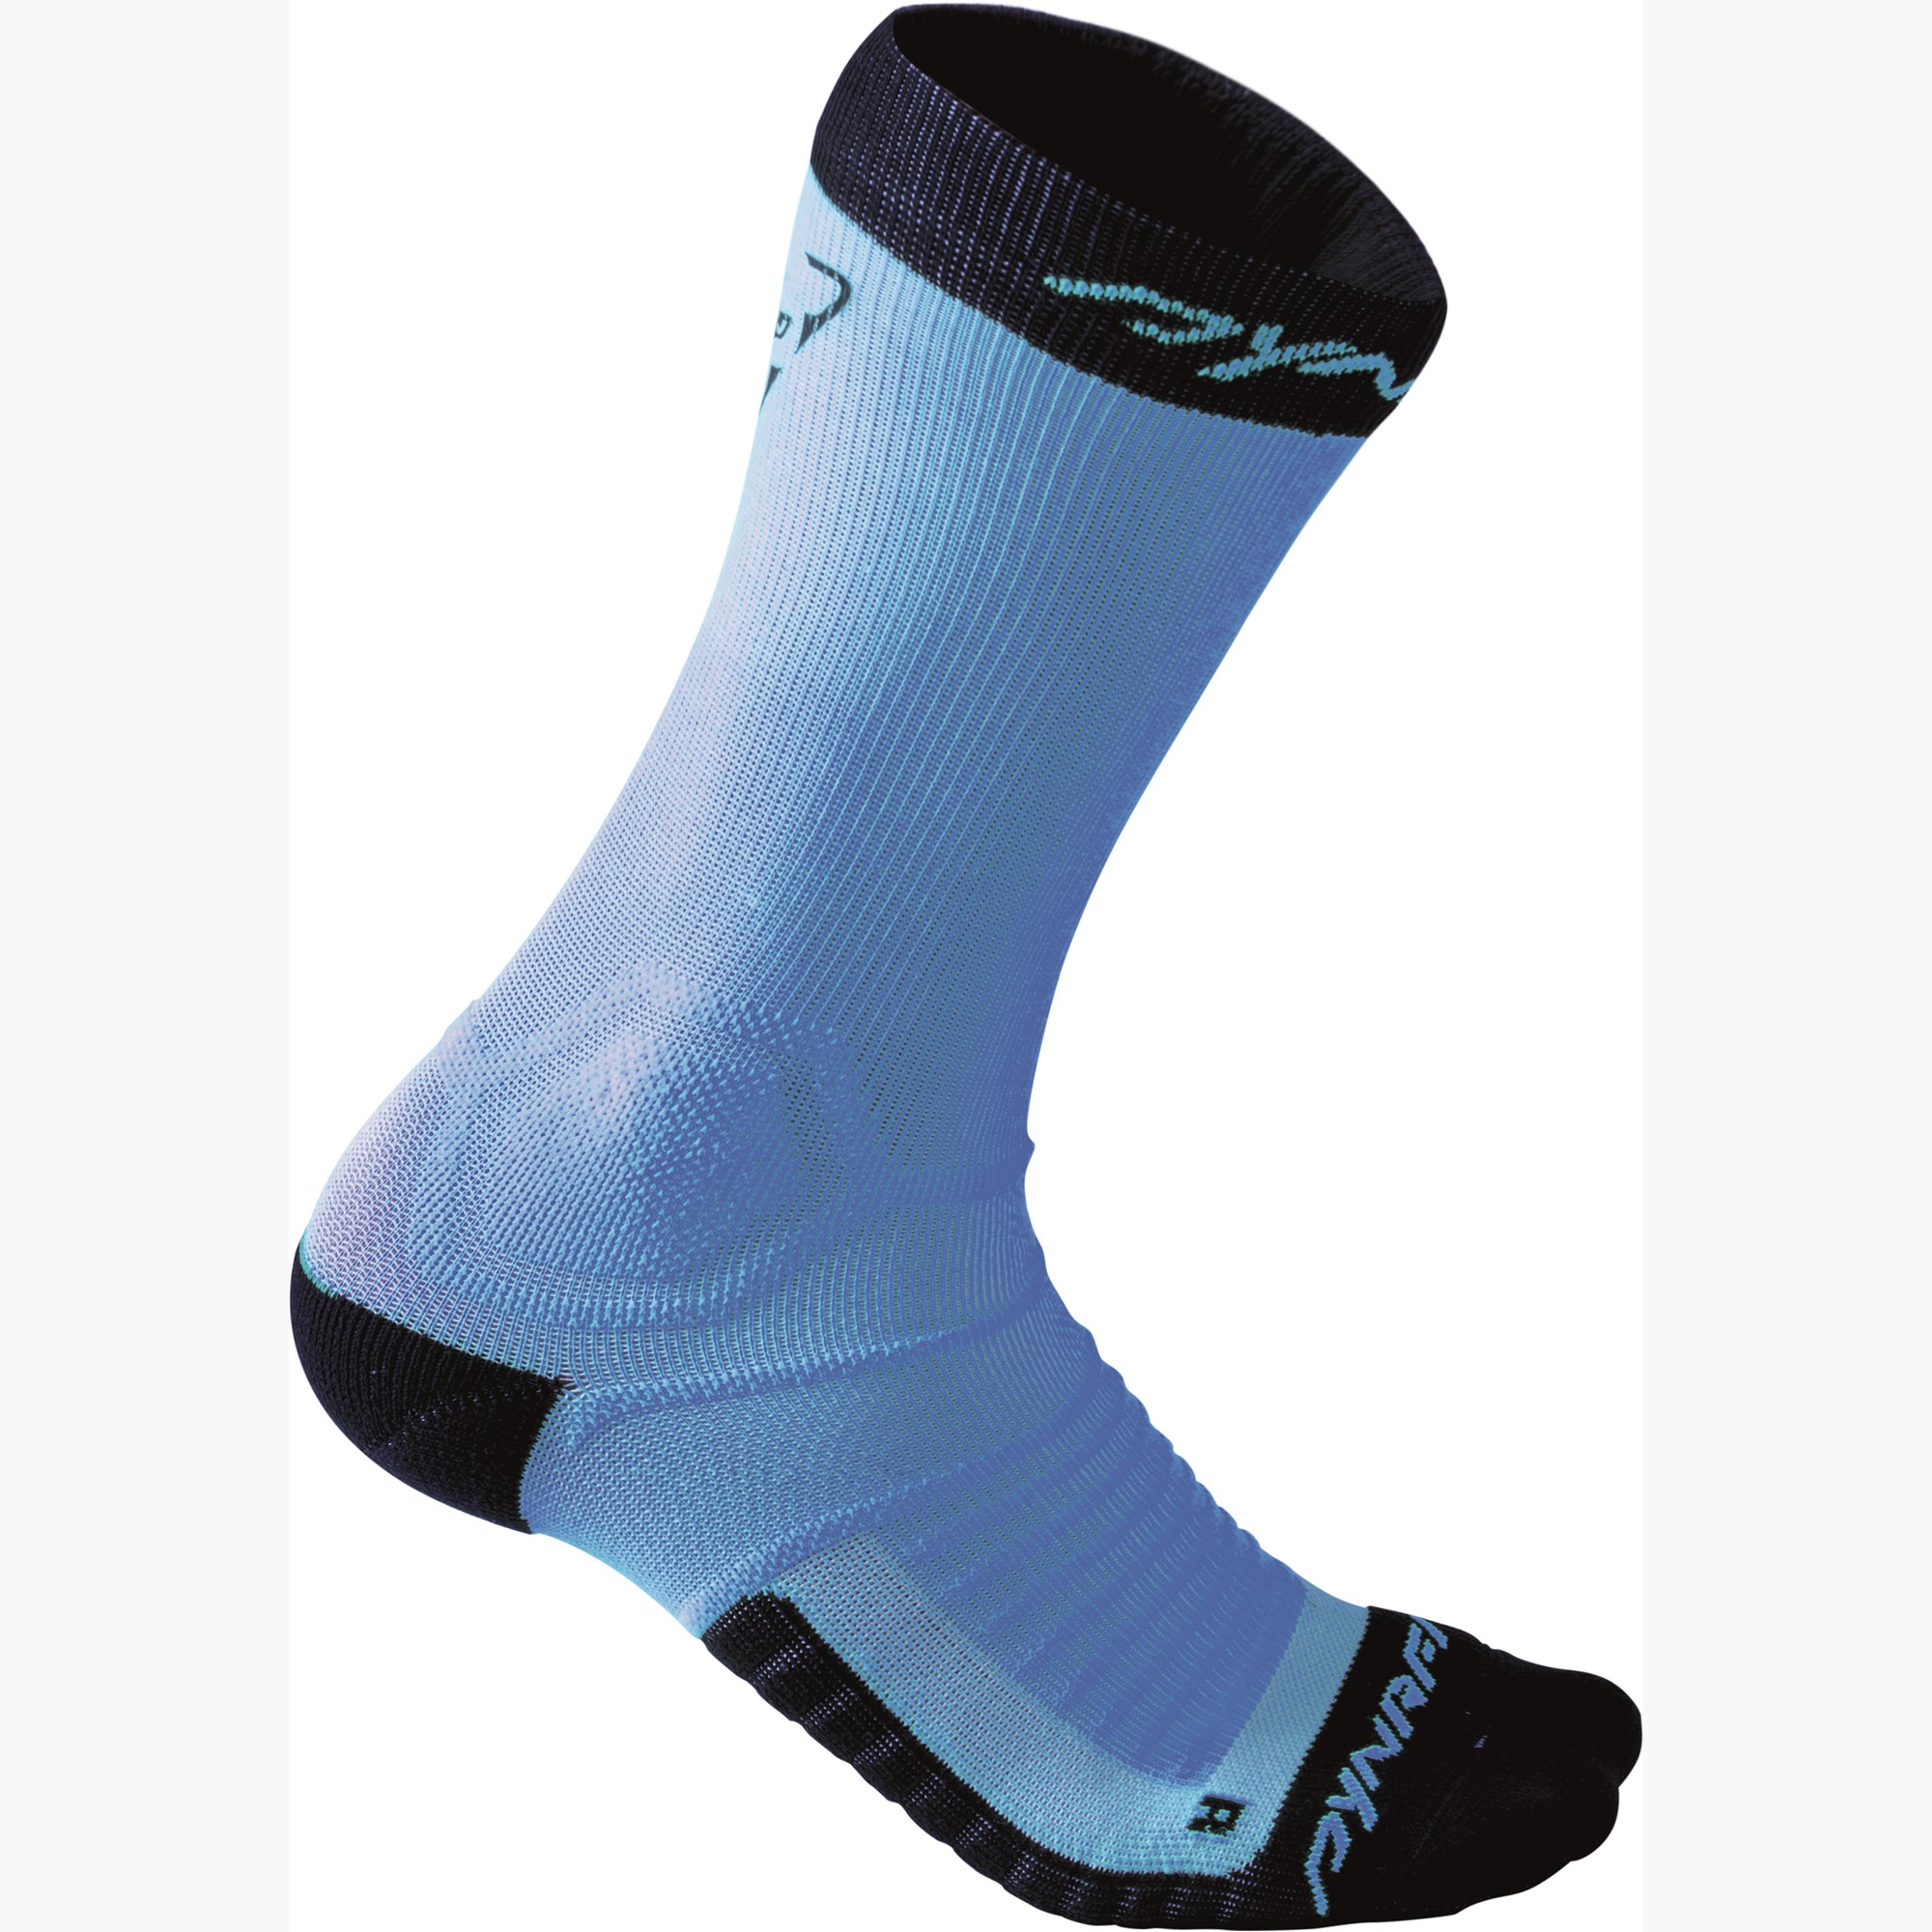 Buy > running socks cushioned > in stock